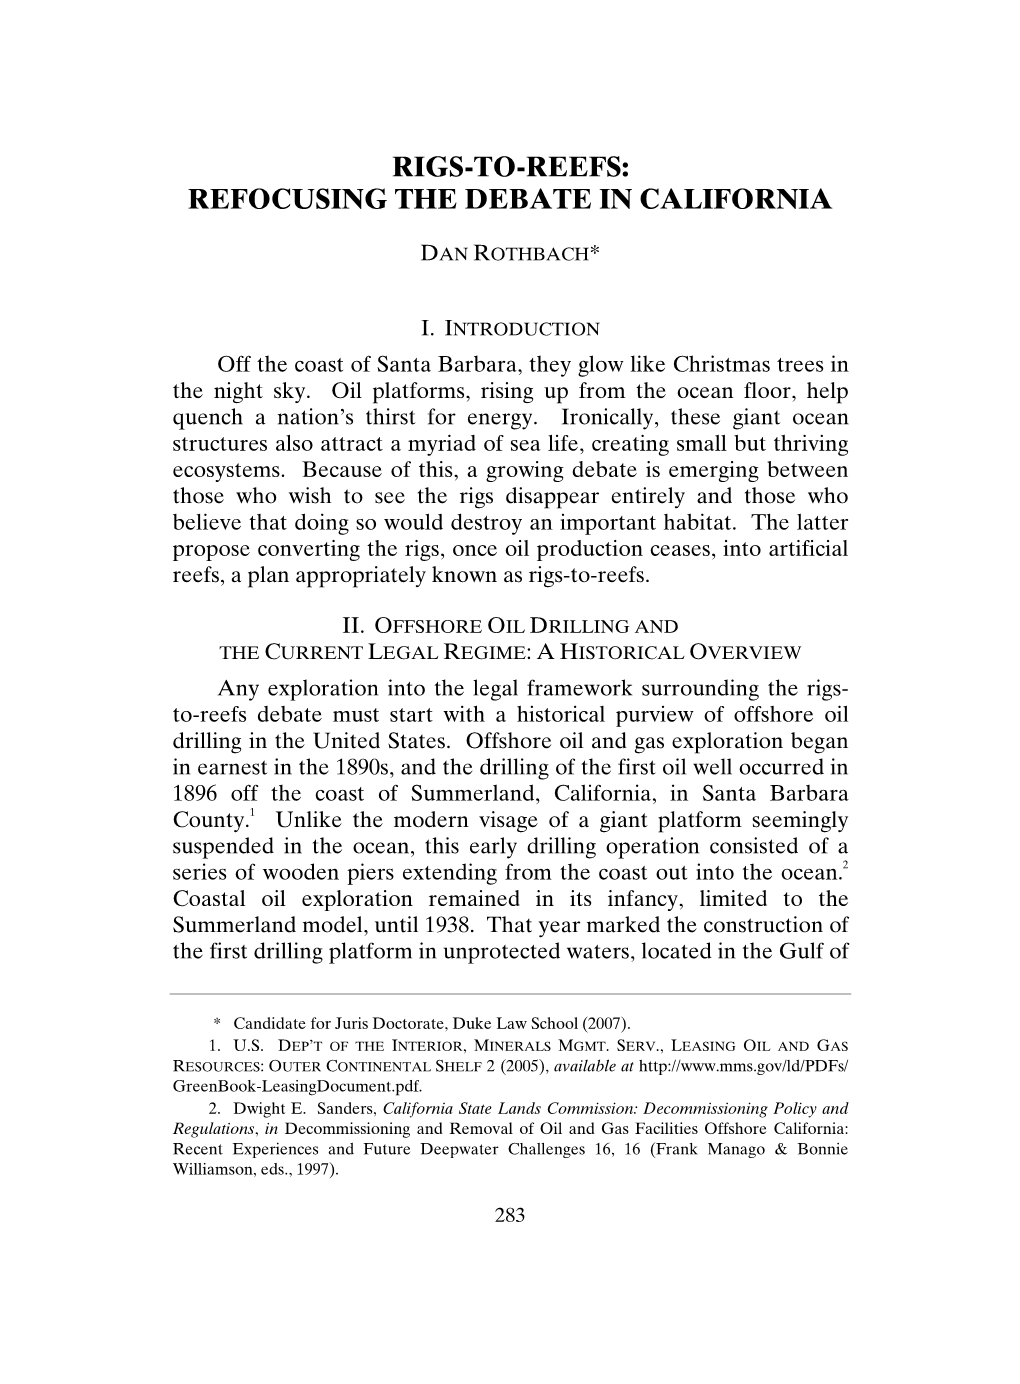 Rigs-To-Reefs: Refocusing the Debate in California